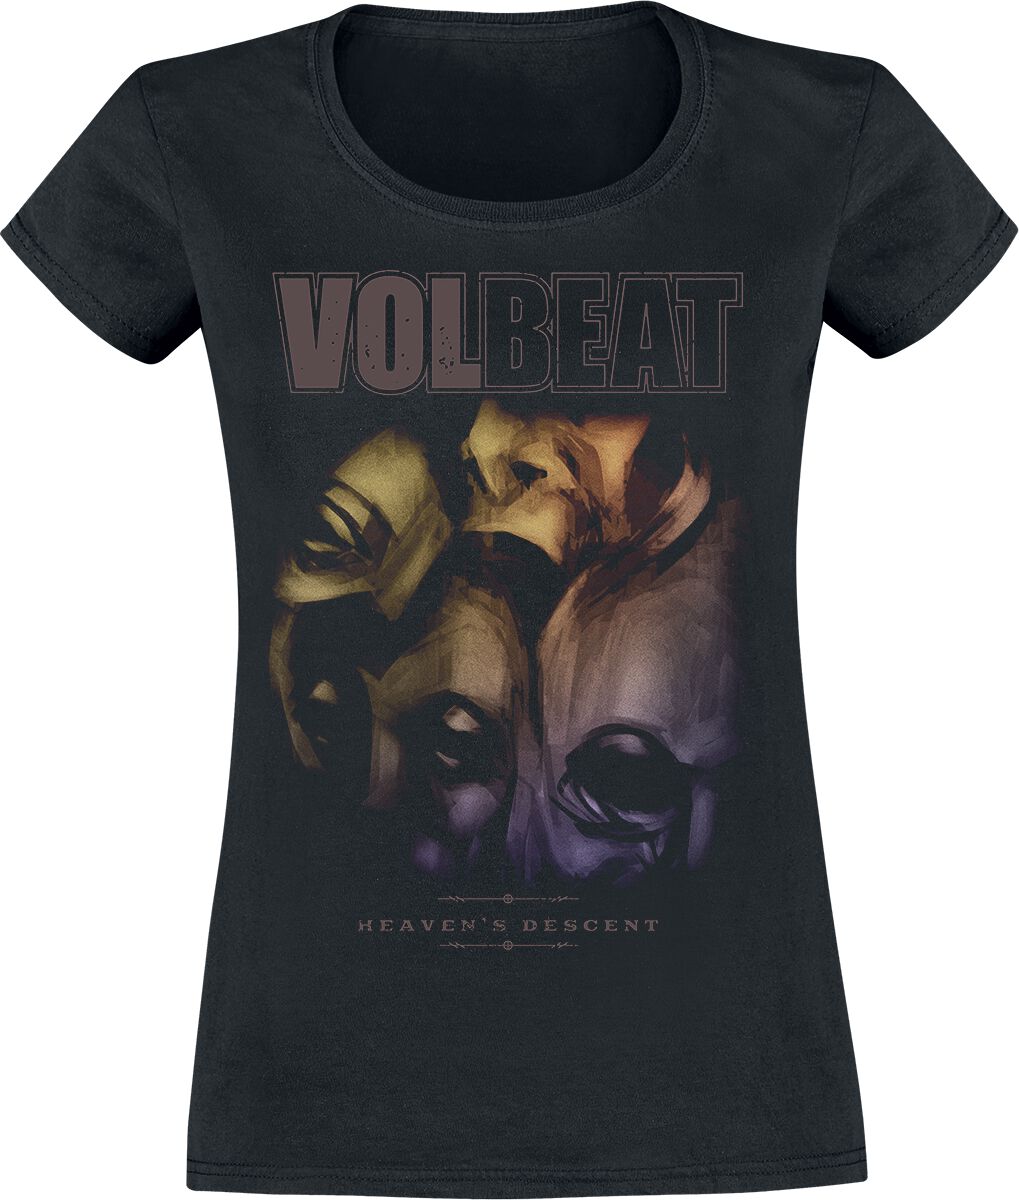 T-Shirt Manches courtes de Volbeat - Heavens Descent - S à XXL - pour Femme - noir